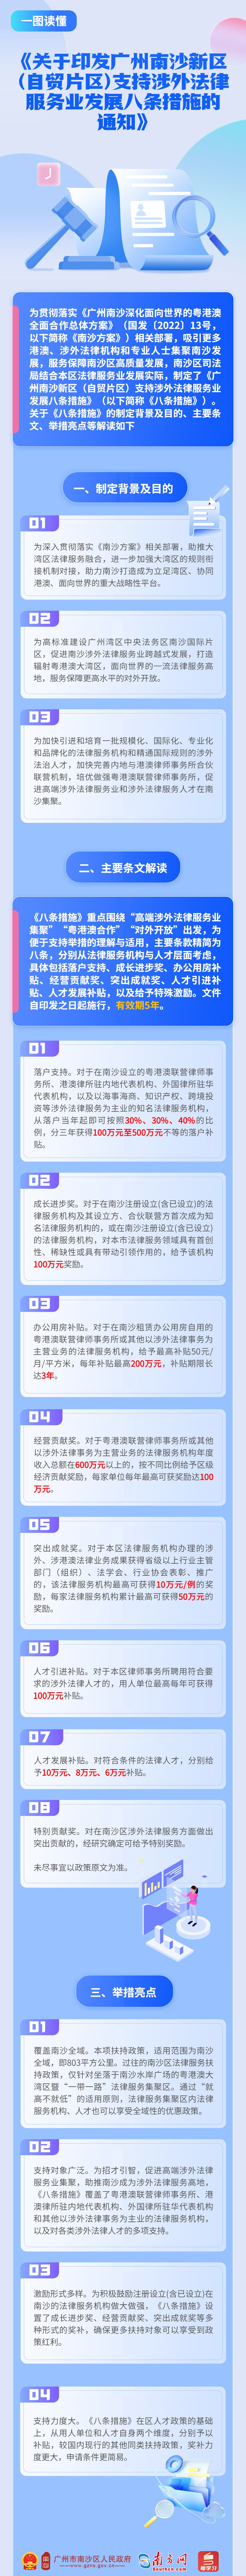 《关于印发广州南沙新区（自贸片区）支持涉外法律服务业发展八条措施的通知》.jpg